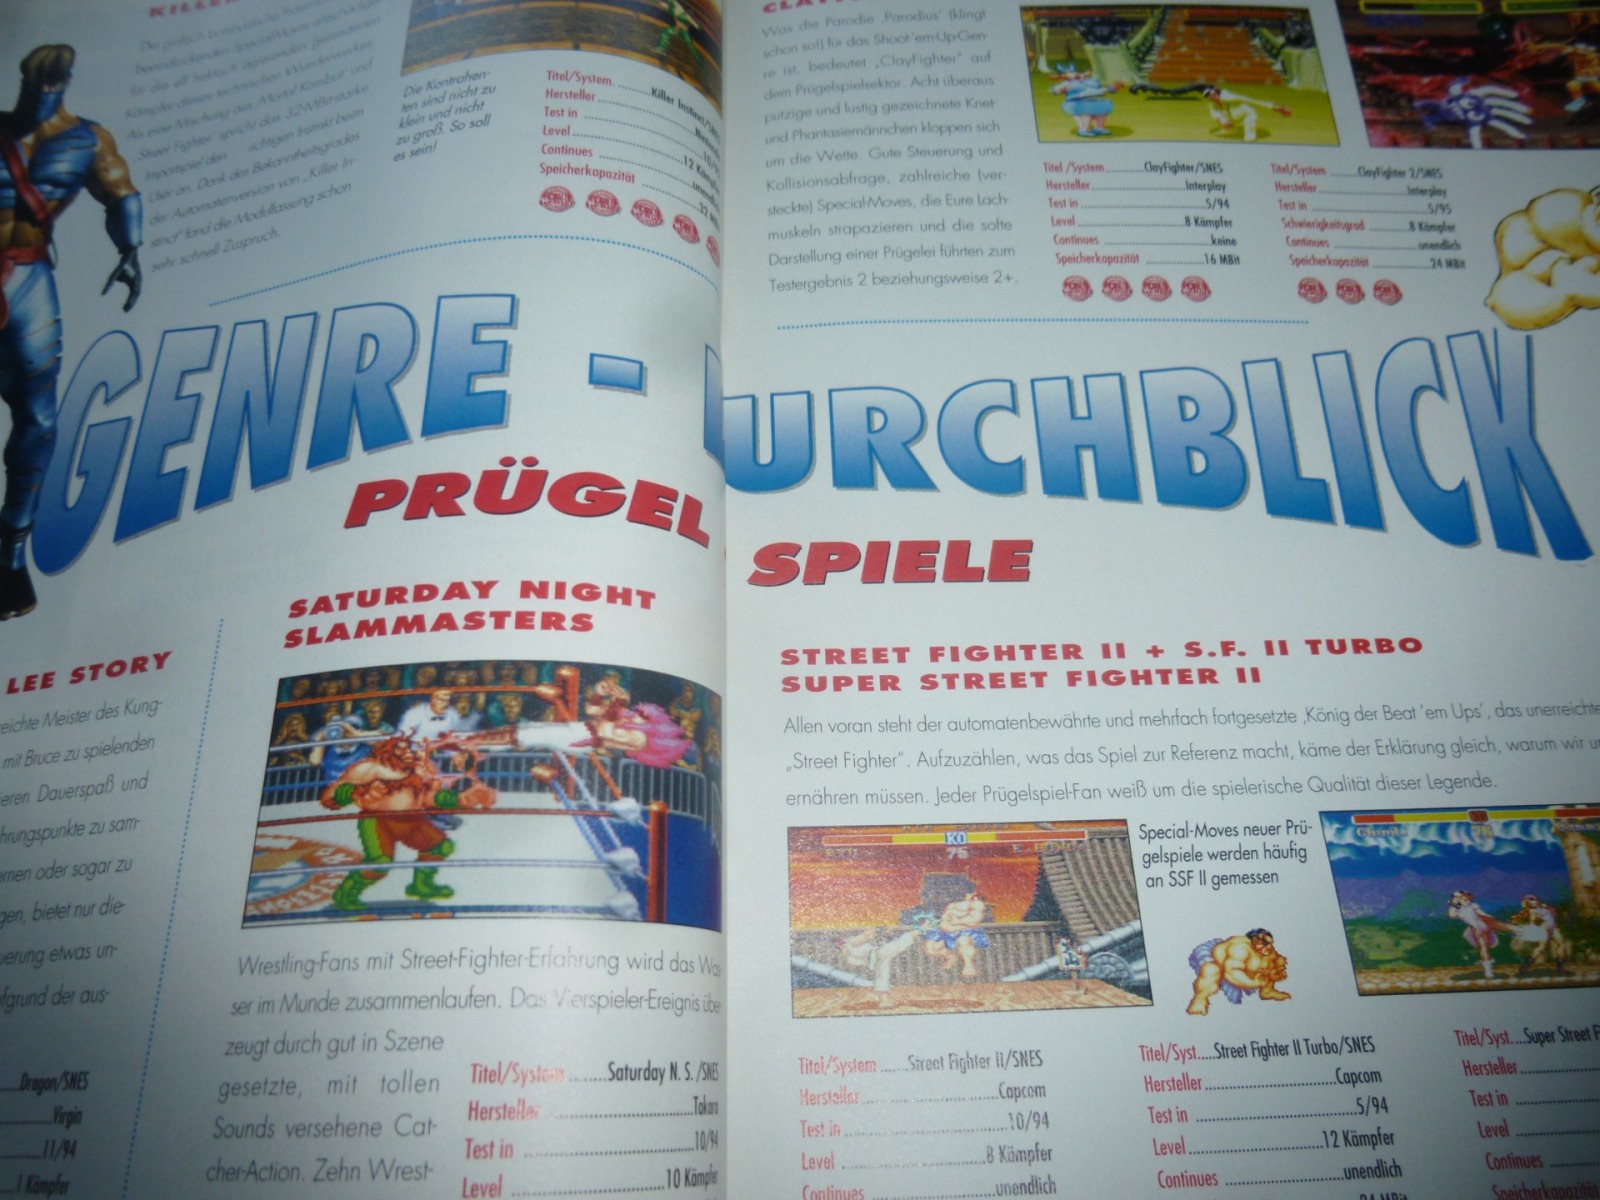 TOTAL Das unabhängige Magazin - 100 Nintendo - Ausgabe 2/96 1996 21